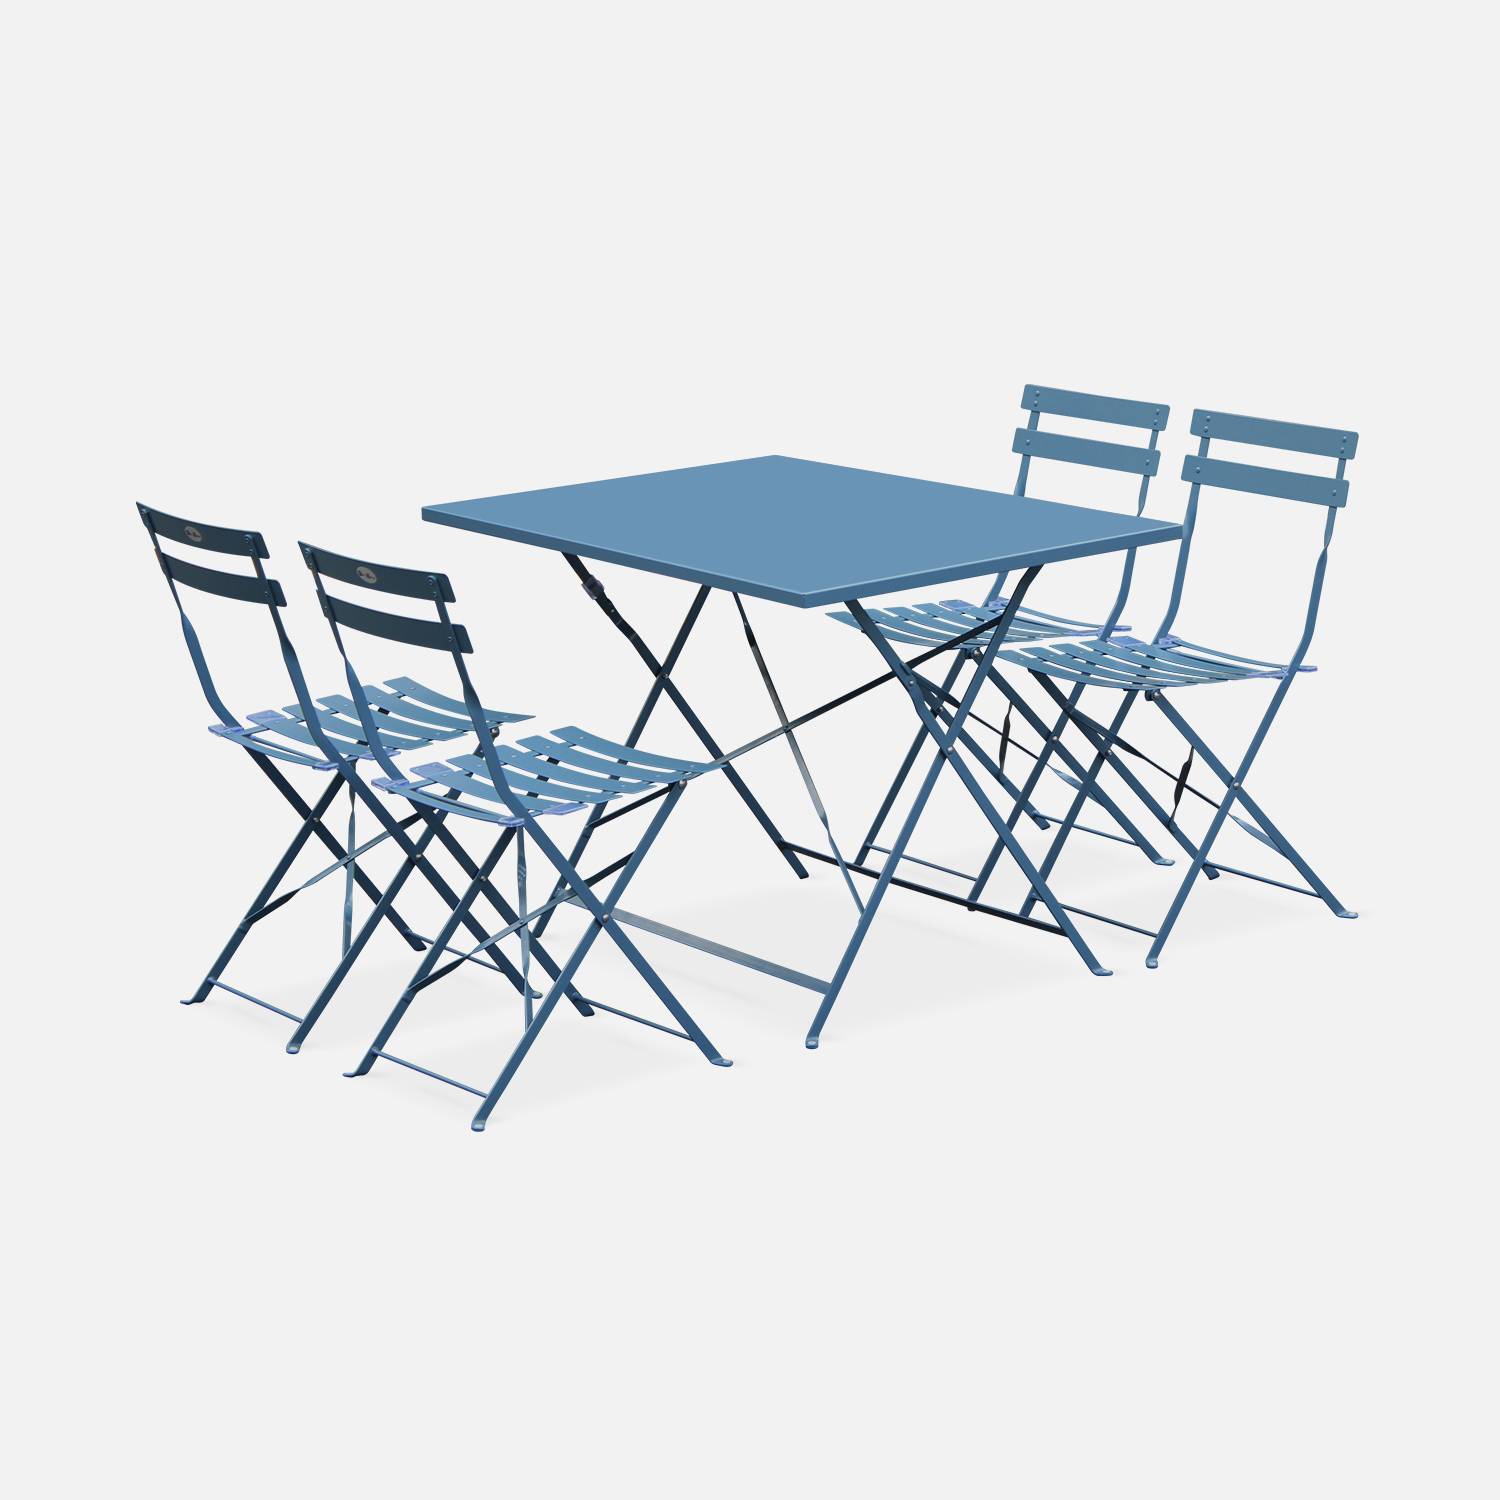 Klappbare Bistro-Gartenmöbel - Graublau, rechteckig Emilia - 110 x 70 cm großer Tisch mit vier Klappstühlen aus pulverbeschichtetem Stahl Photo2